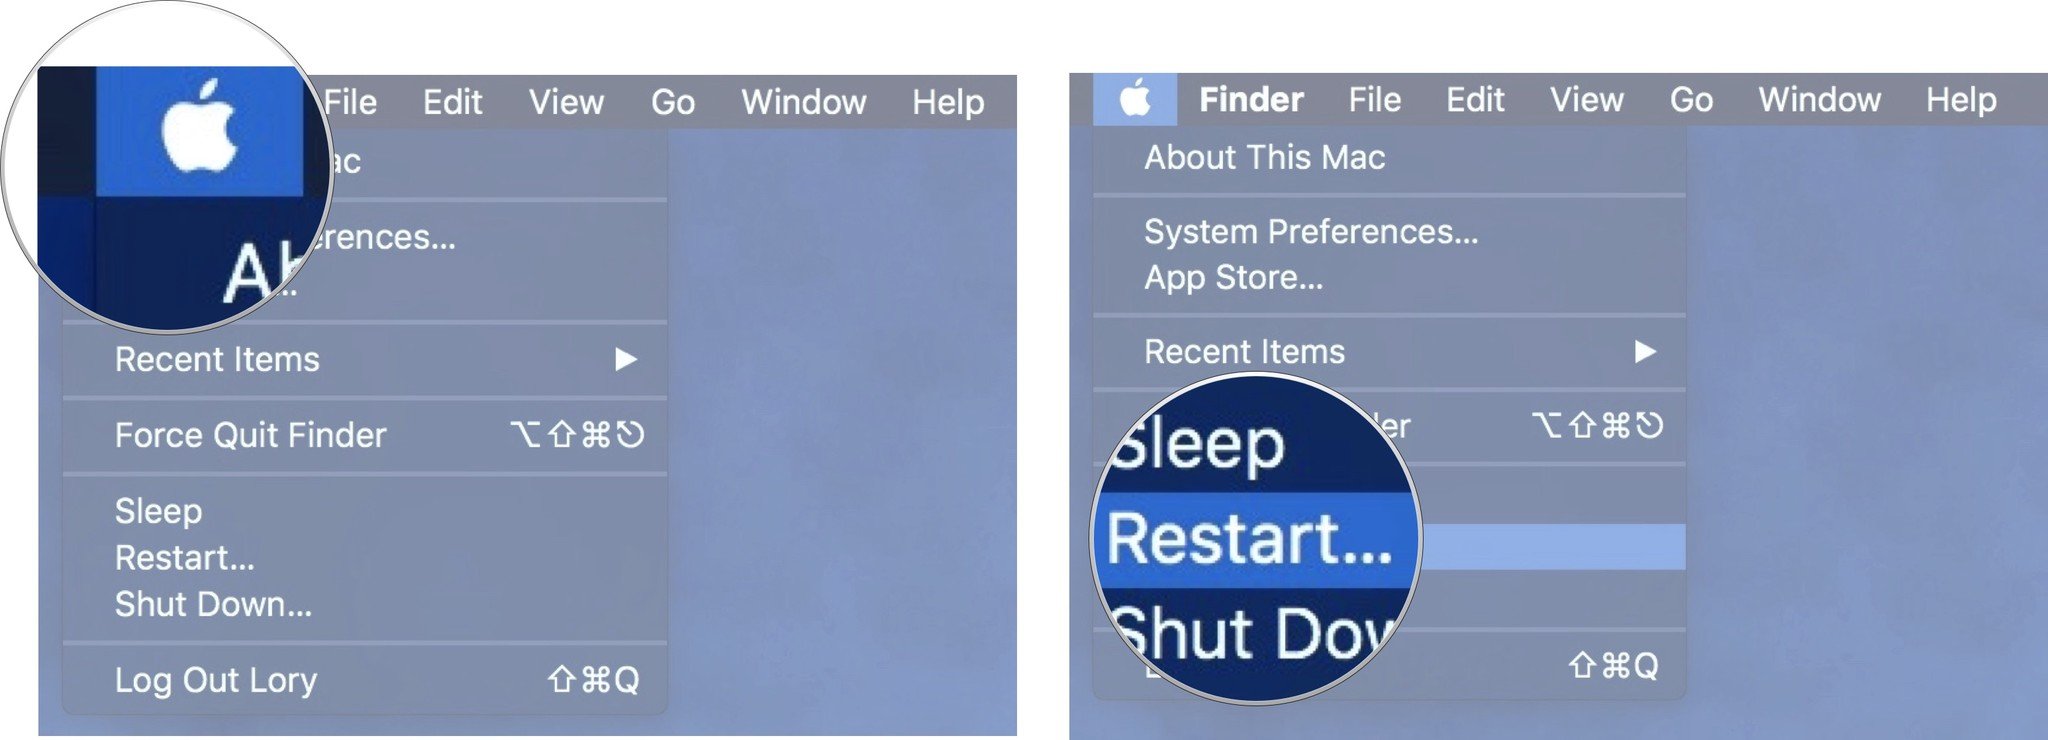 Чтобы установить новую копию macOS, подключите Mac к Интернету, затем щелкните значок Apple.  Затем выберите «Перезагрузить».